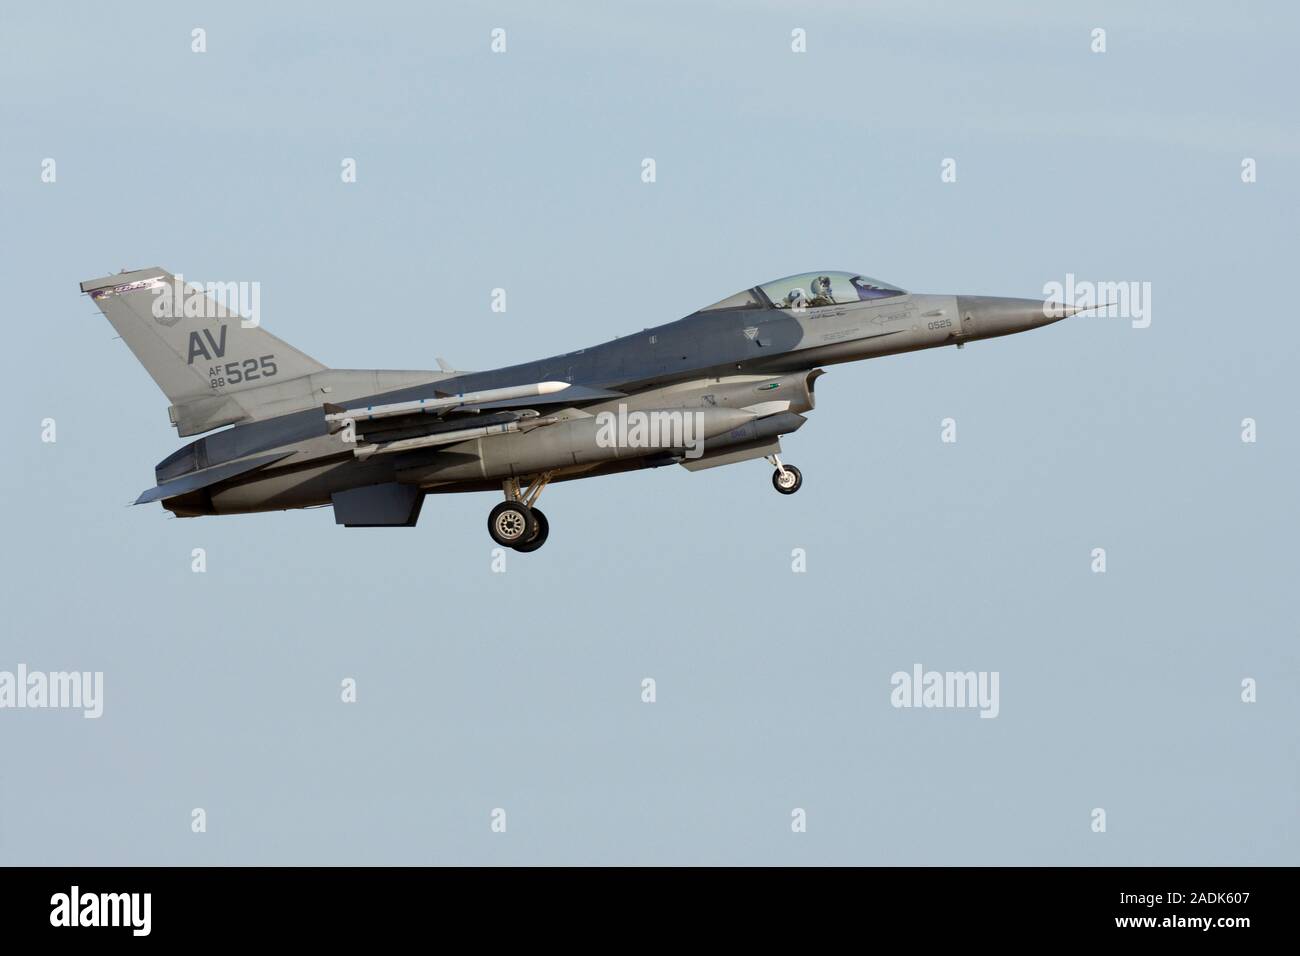 Lockheed Martin F-16C Fighting Falcon, 88-0525 de la 31e Escadre de chasse, 510th Fighter Squadron, queue, USAFE 'AV' code, à Aviano AB, Italie Banque D'Images